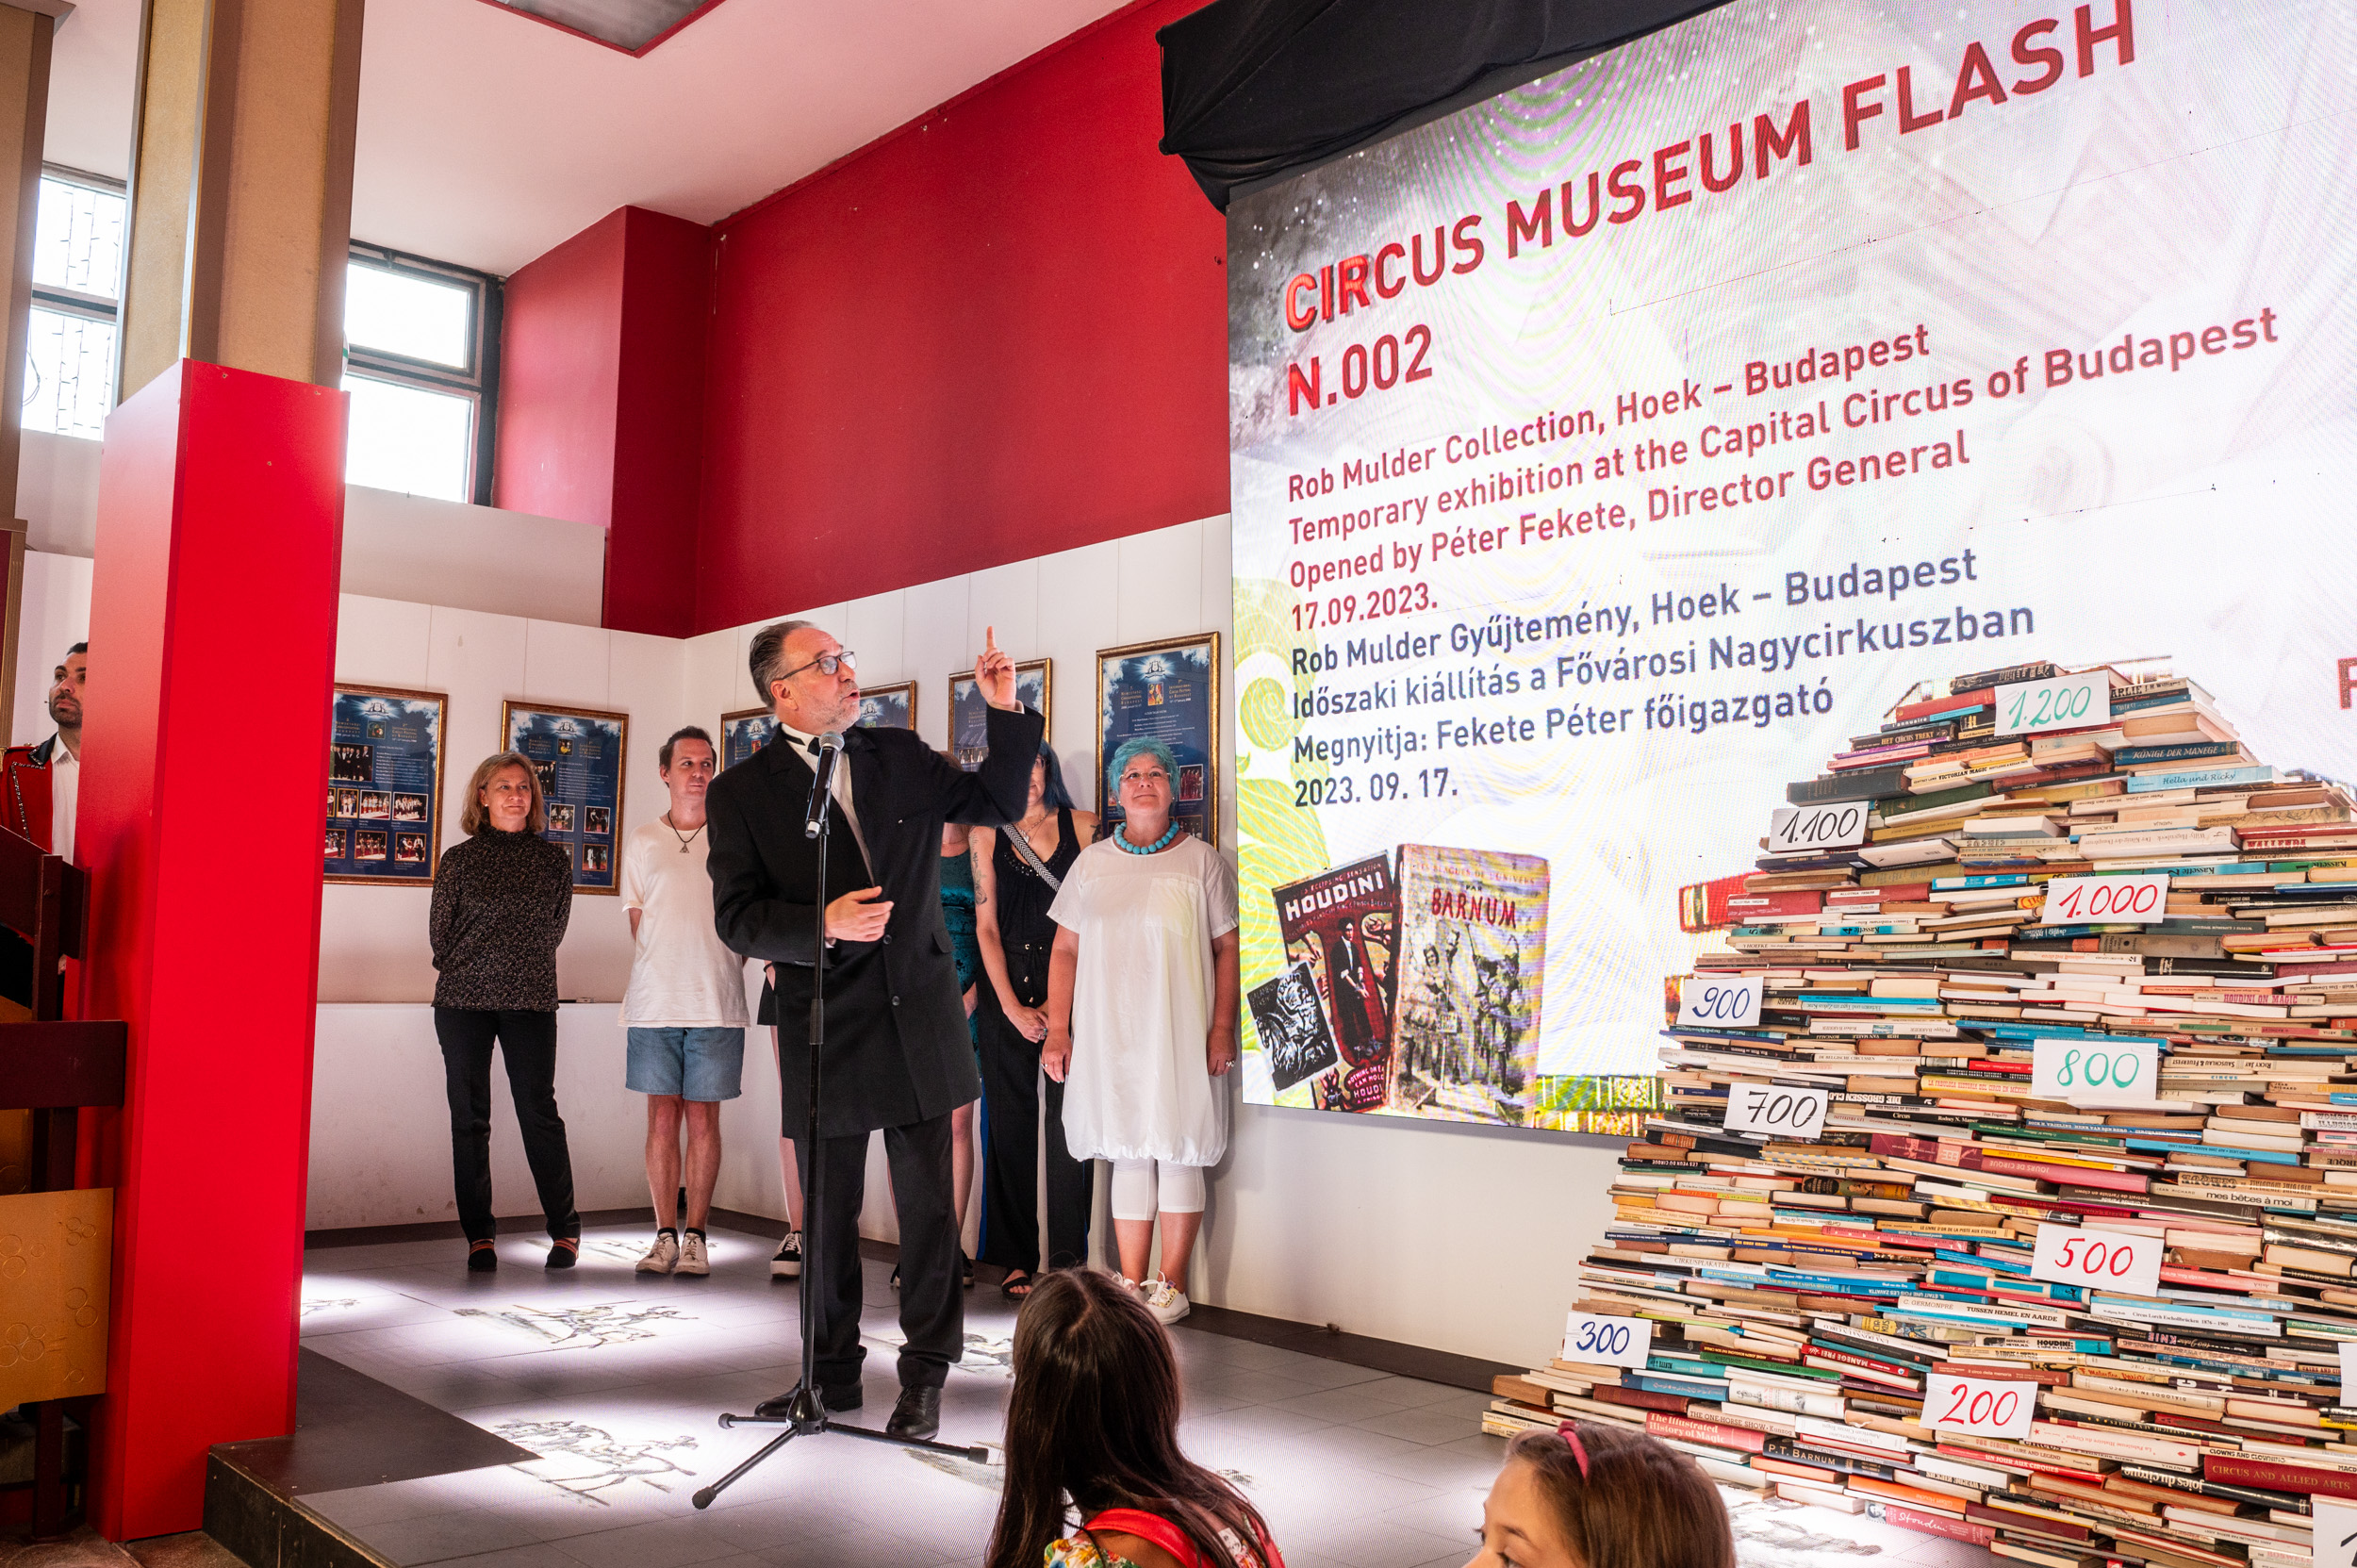 Hatalmas sikere volt a „Circus Museum Flash N.002: Rob Mulder Collection, Hoek – Budapest” című időszaki kiállításmegnyitóna